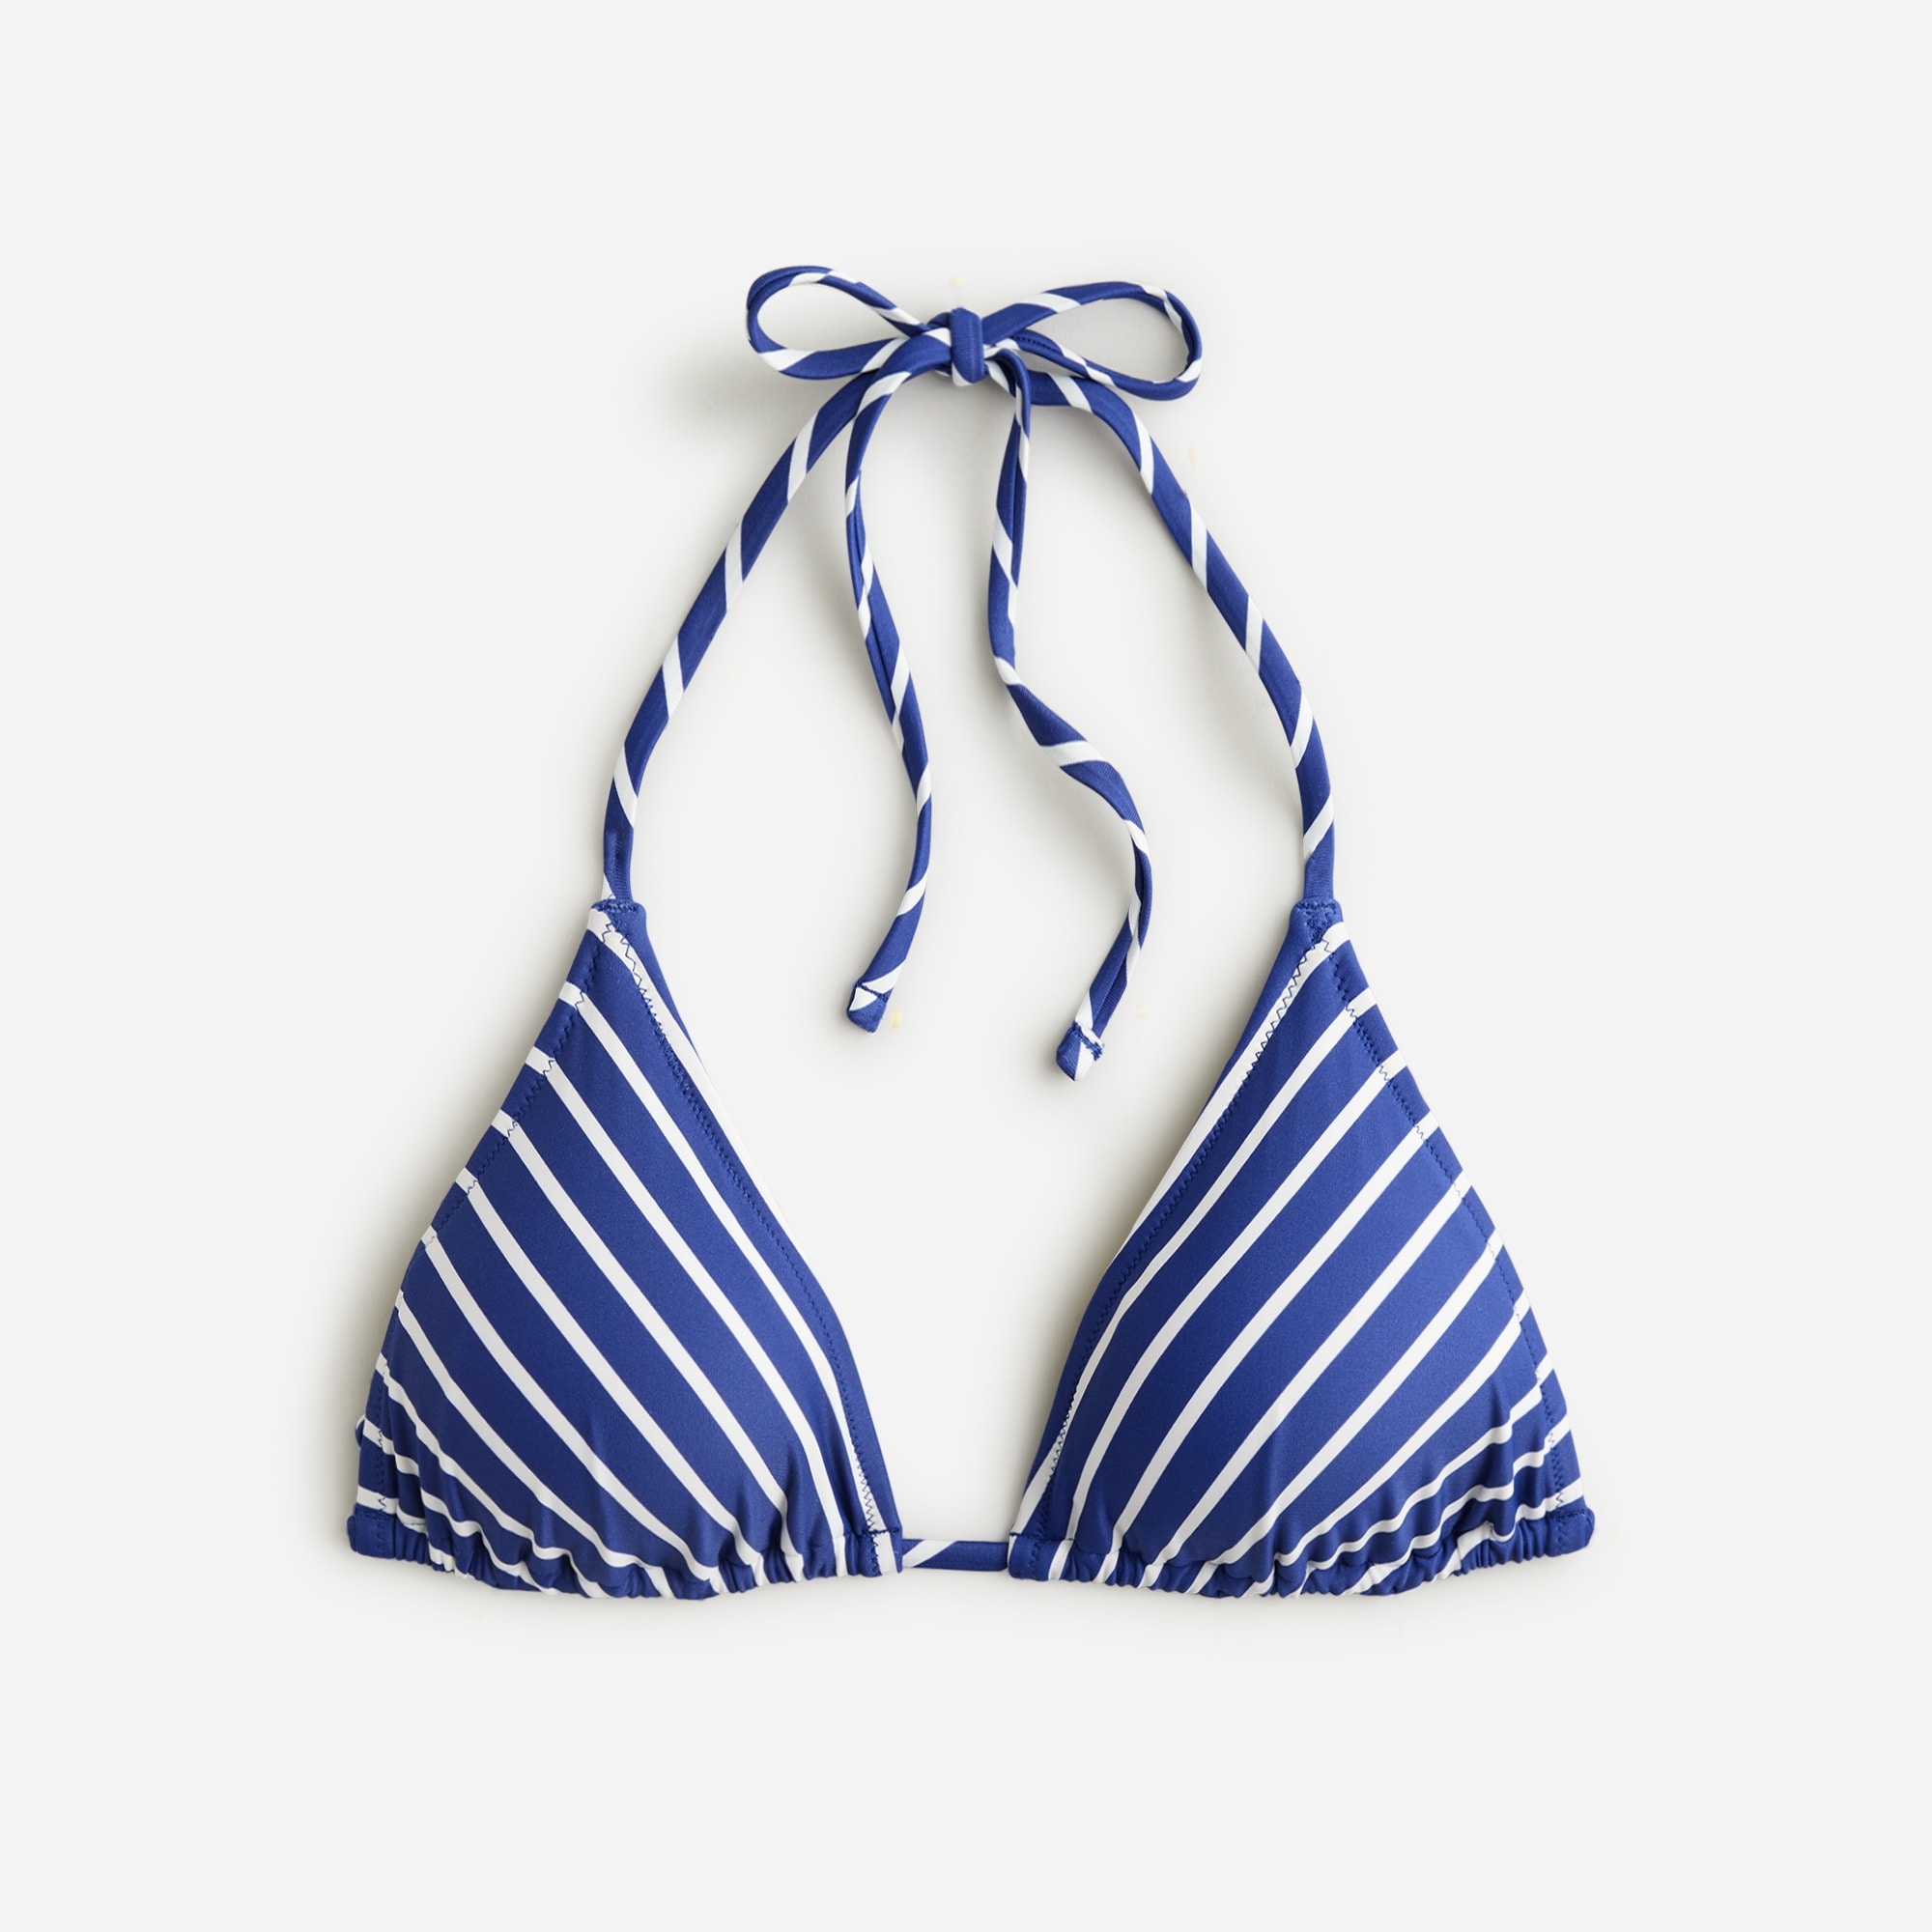  String bikini top in stripe